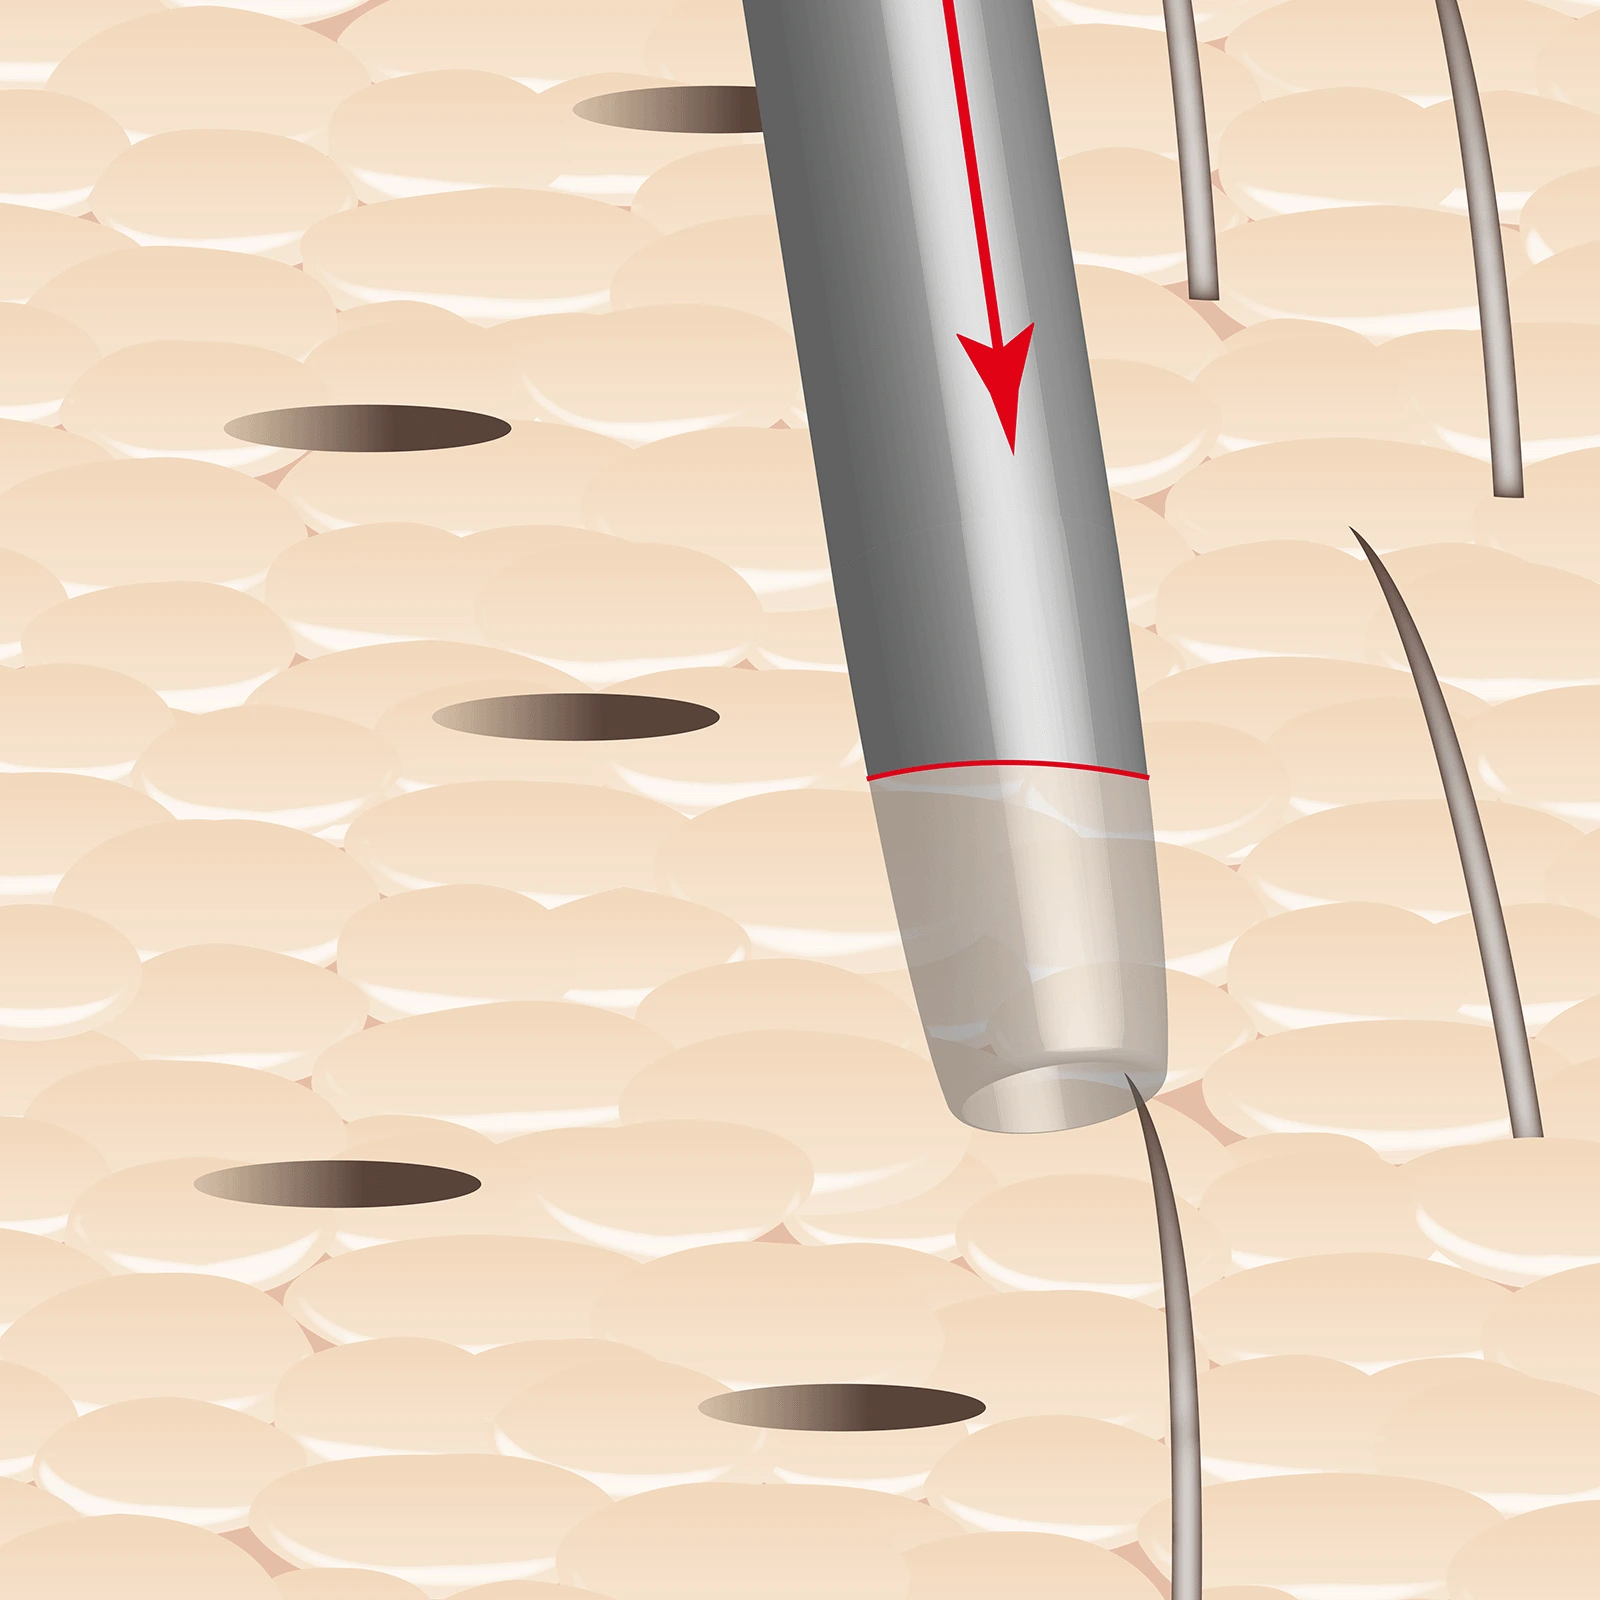 Schritt 6: Grafische Darstellung, wie mit einer Hohlnadel das Zielgebiet der FUE-Haartransplantation vorbereitet wird